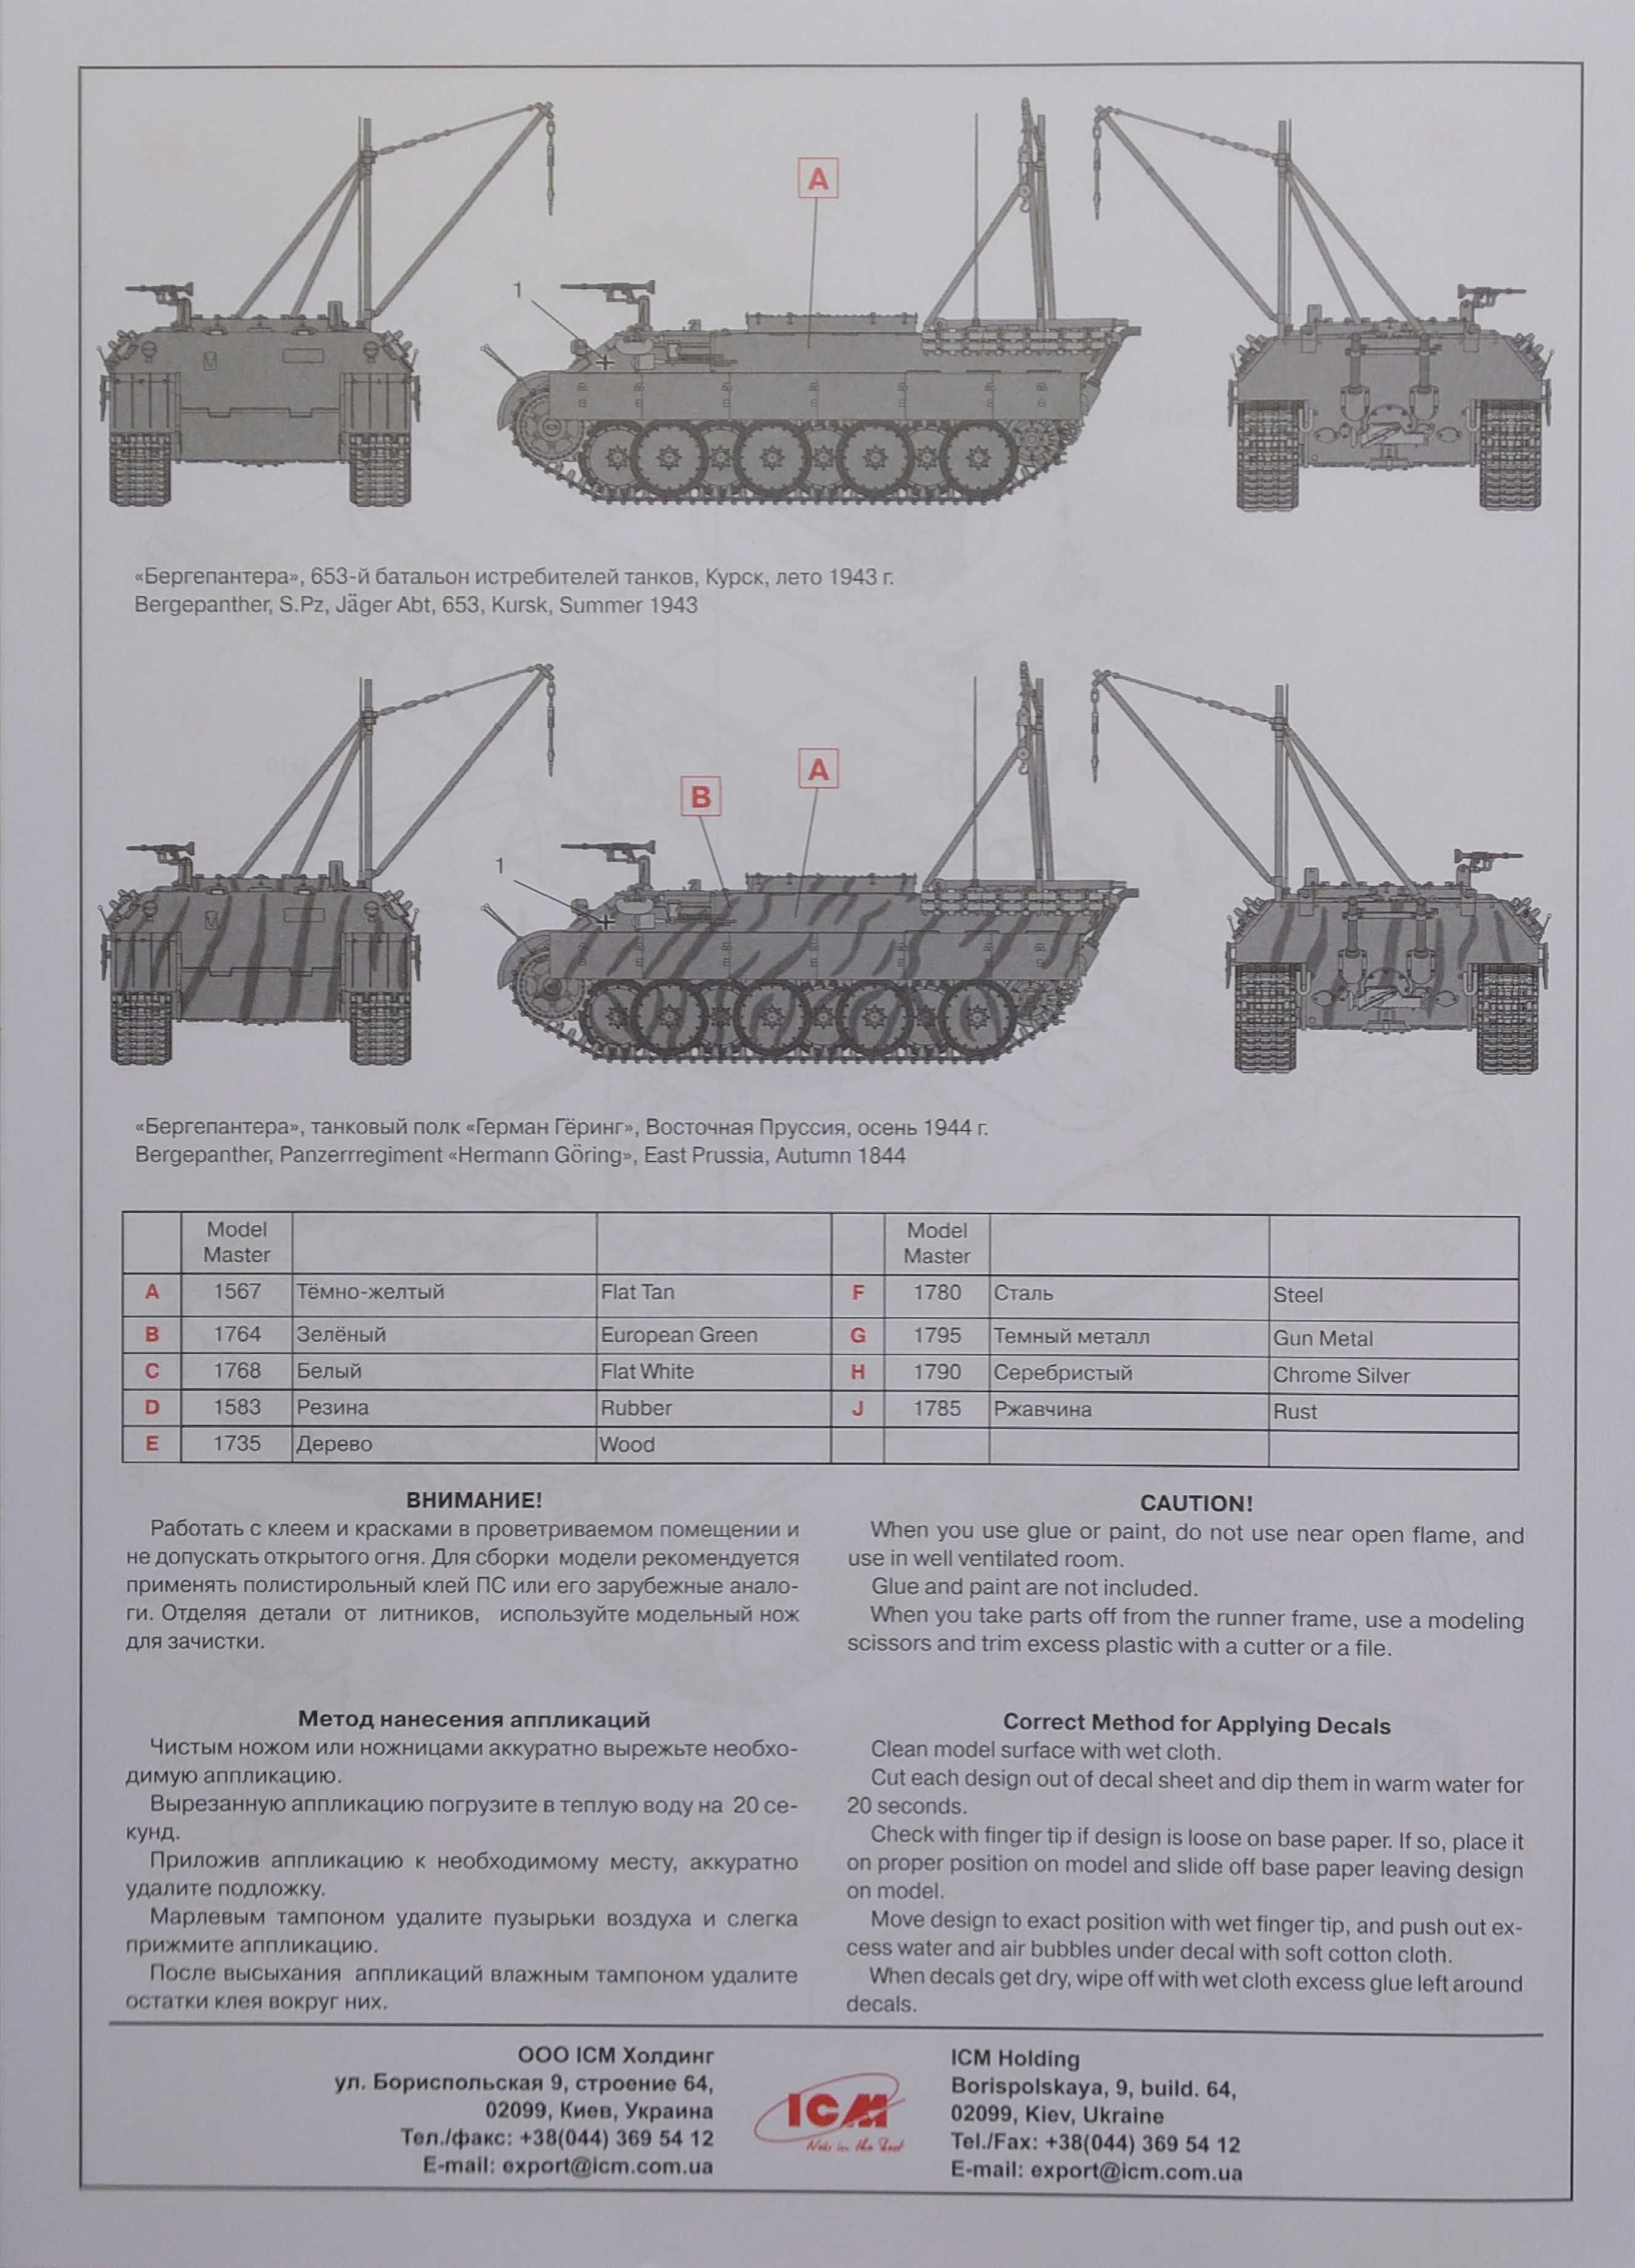 Сборная пластиковая модель танка Bergepanther Sd.Kfz.179 от ICM (1:35)